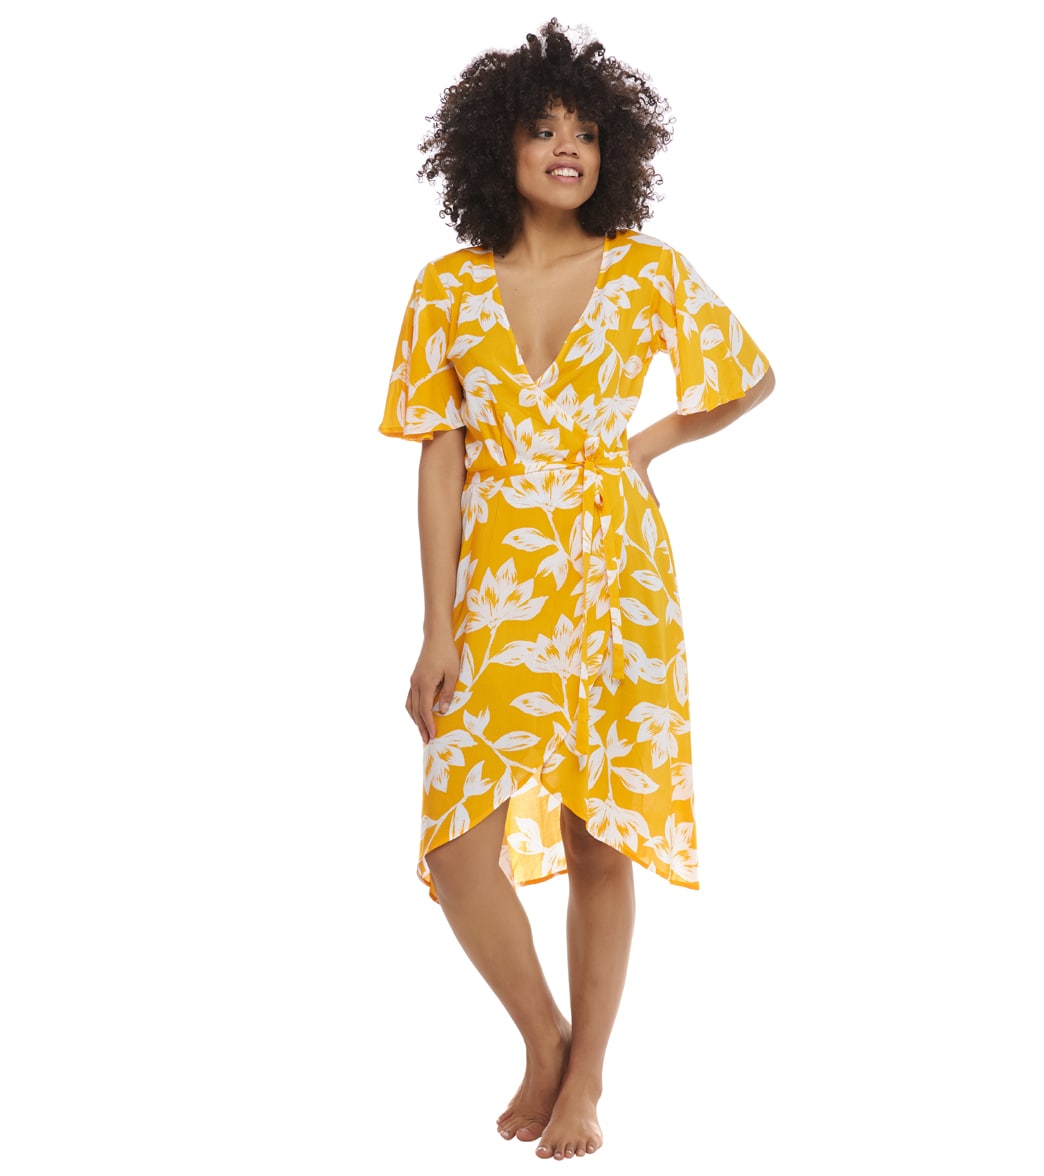 Skye Grace Cover Up Dress - Sunflower/Anguilla Prt Medium - Swimoutlet.com